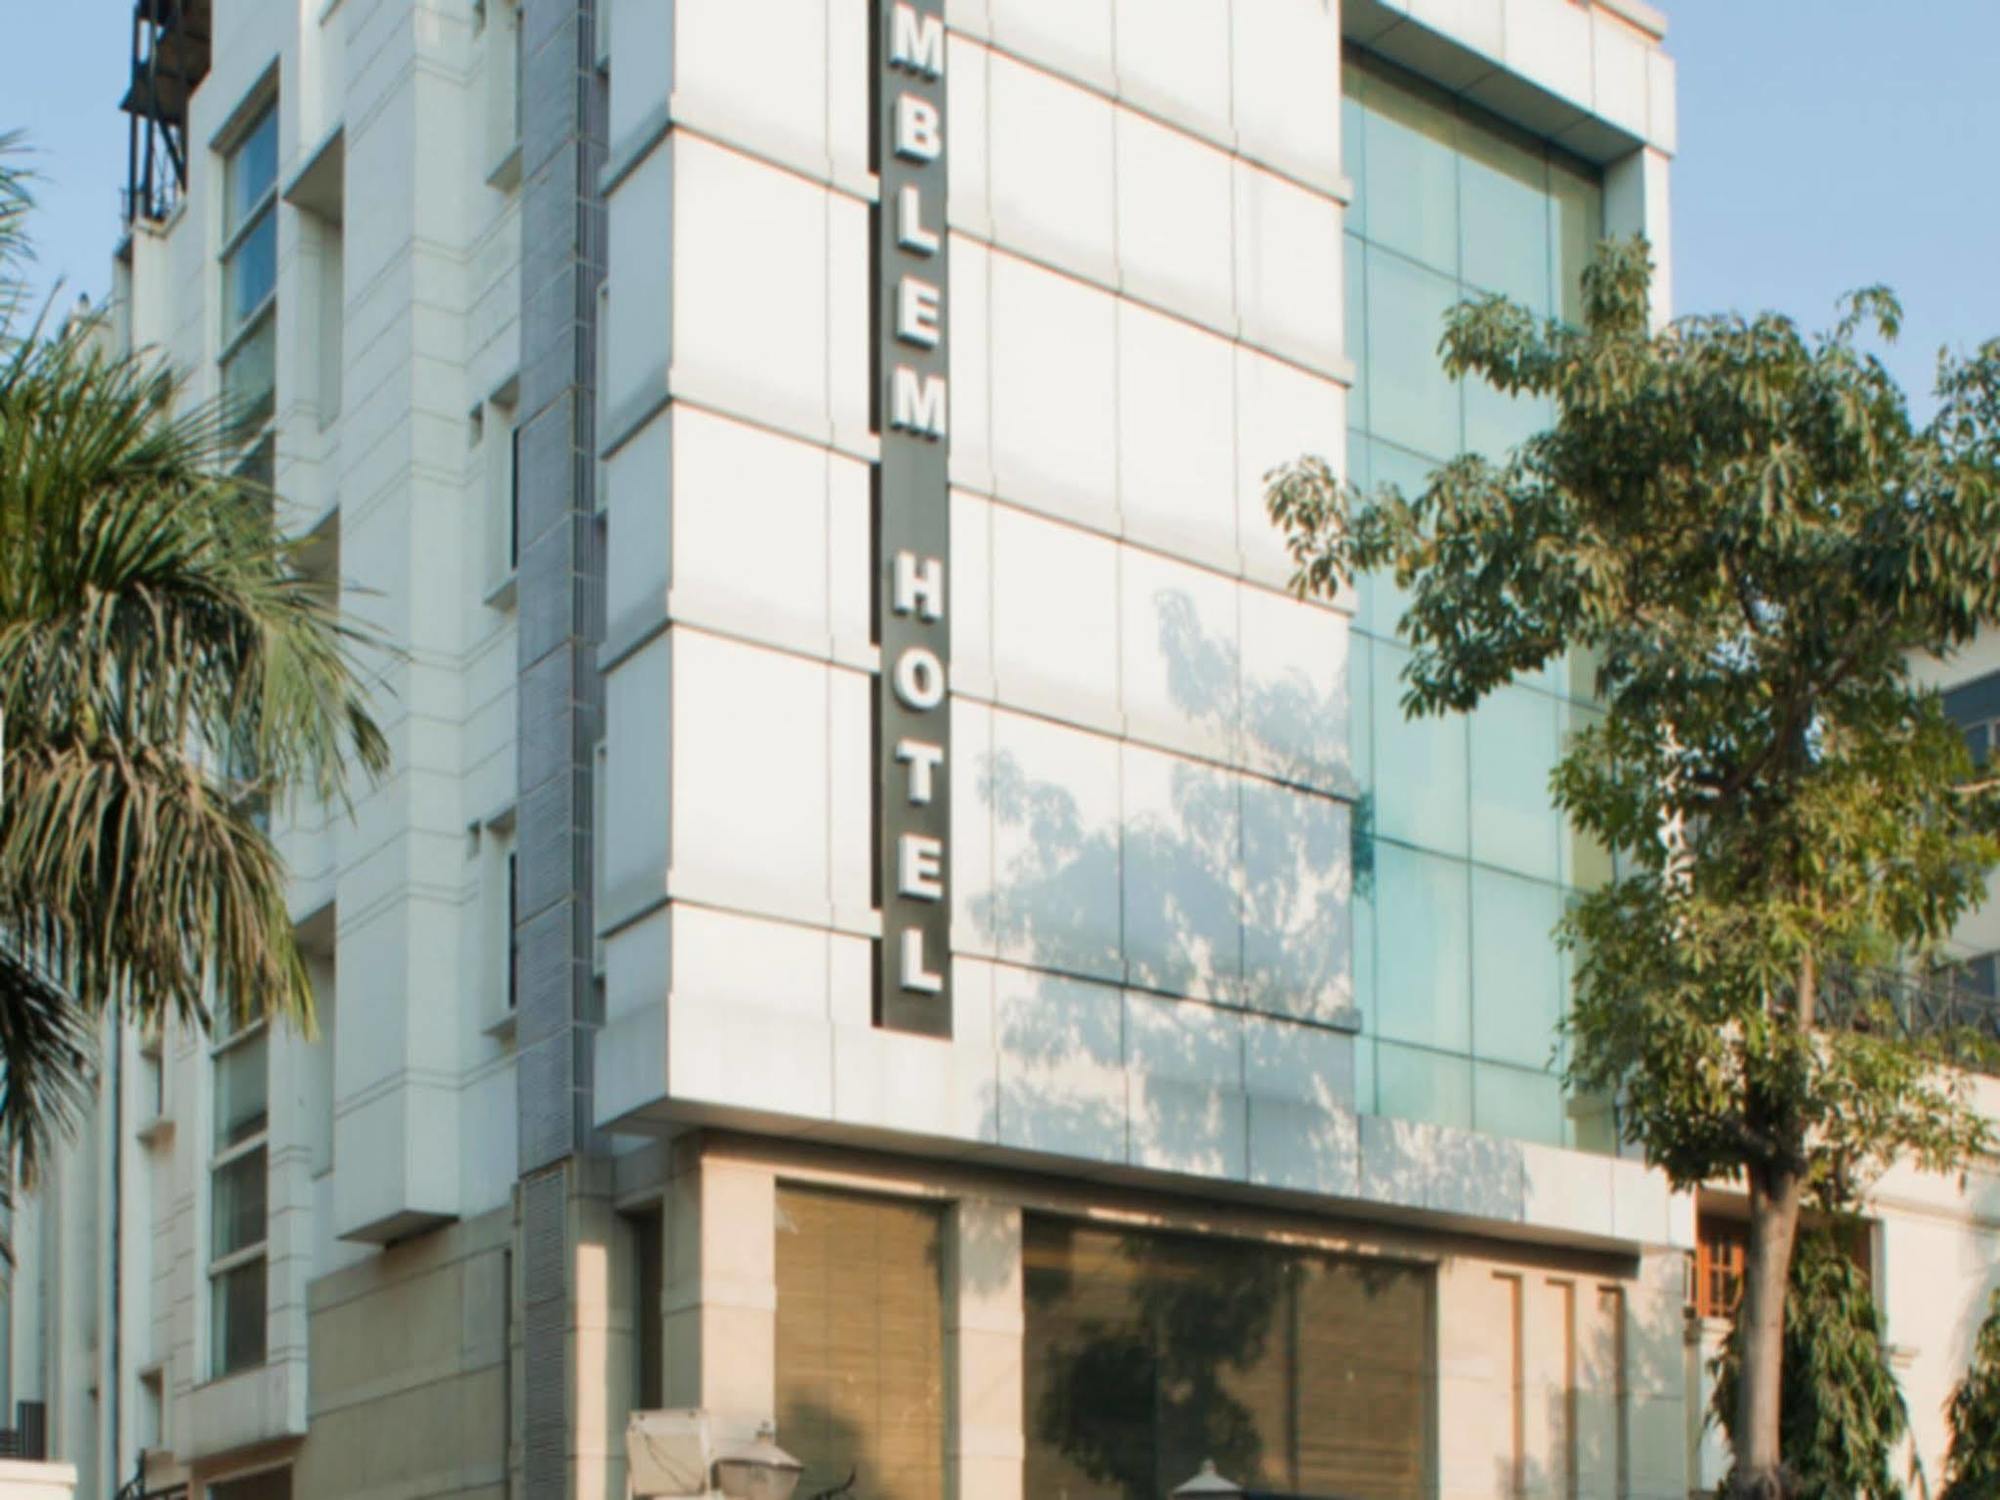 Emblem Hotel New Friends Colony, New Delhi Exterior photo